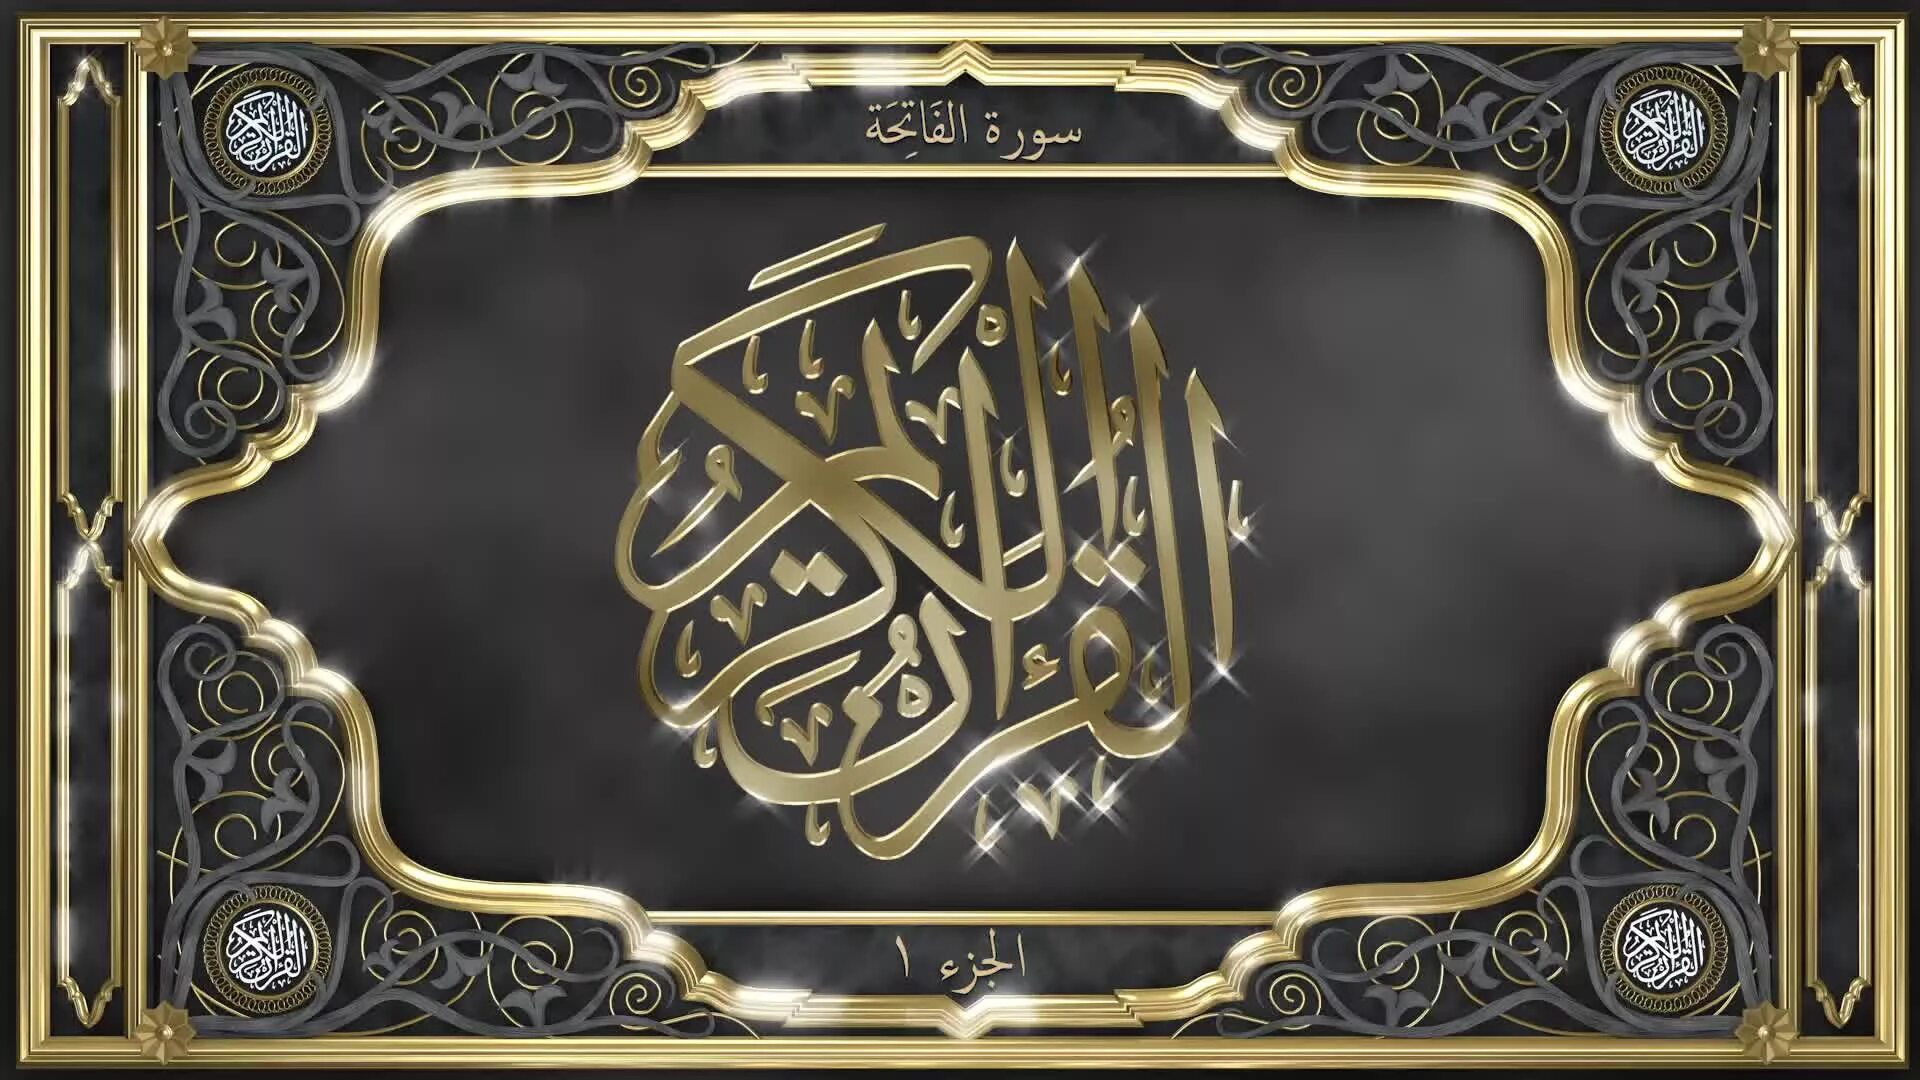 Quran surah al. Аль Фатиха каллиграфия на арабском. Сура Аль Фатиха каллиграфия. Рамка для Корана. Сура Аль Фатиха на арабском.